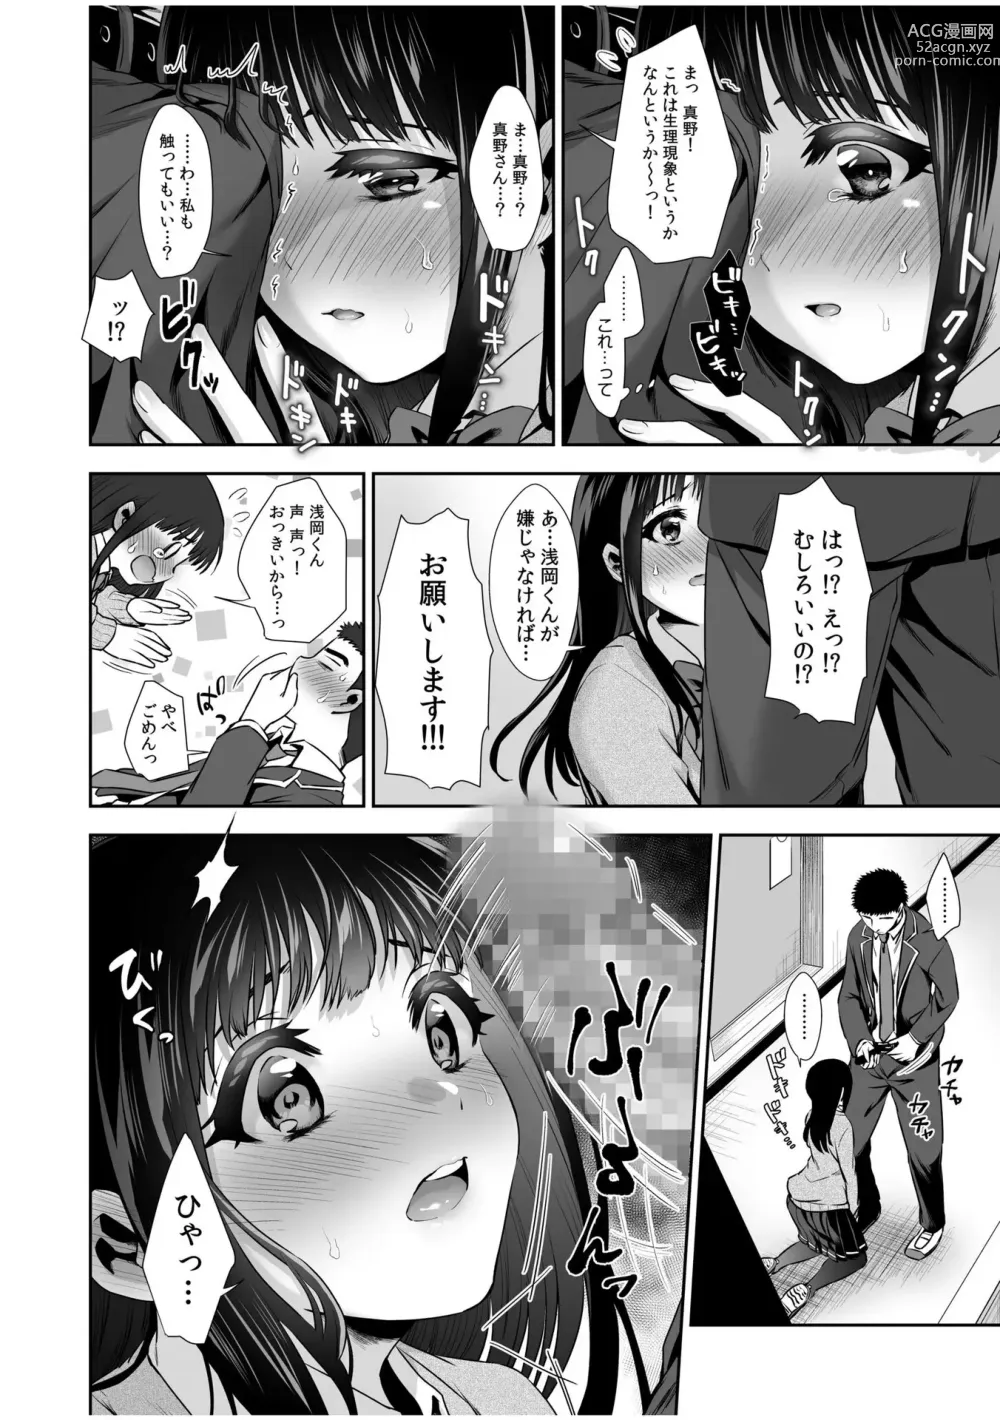 Page 19 of manga Pure na Jimiko ga No-Pan de Eroi no o Ore dake ga Shitte iru! 1-2